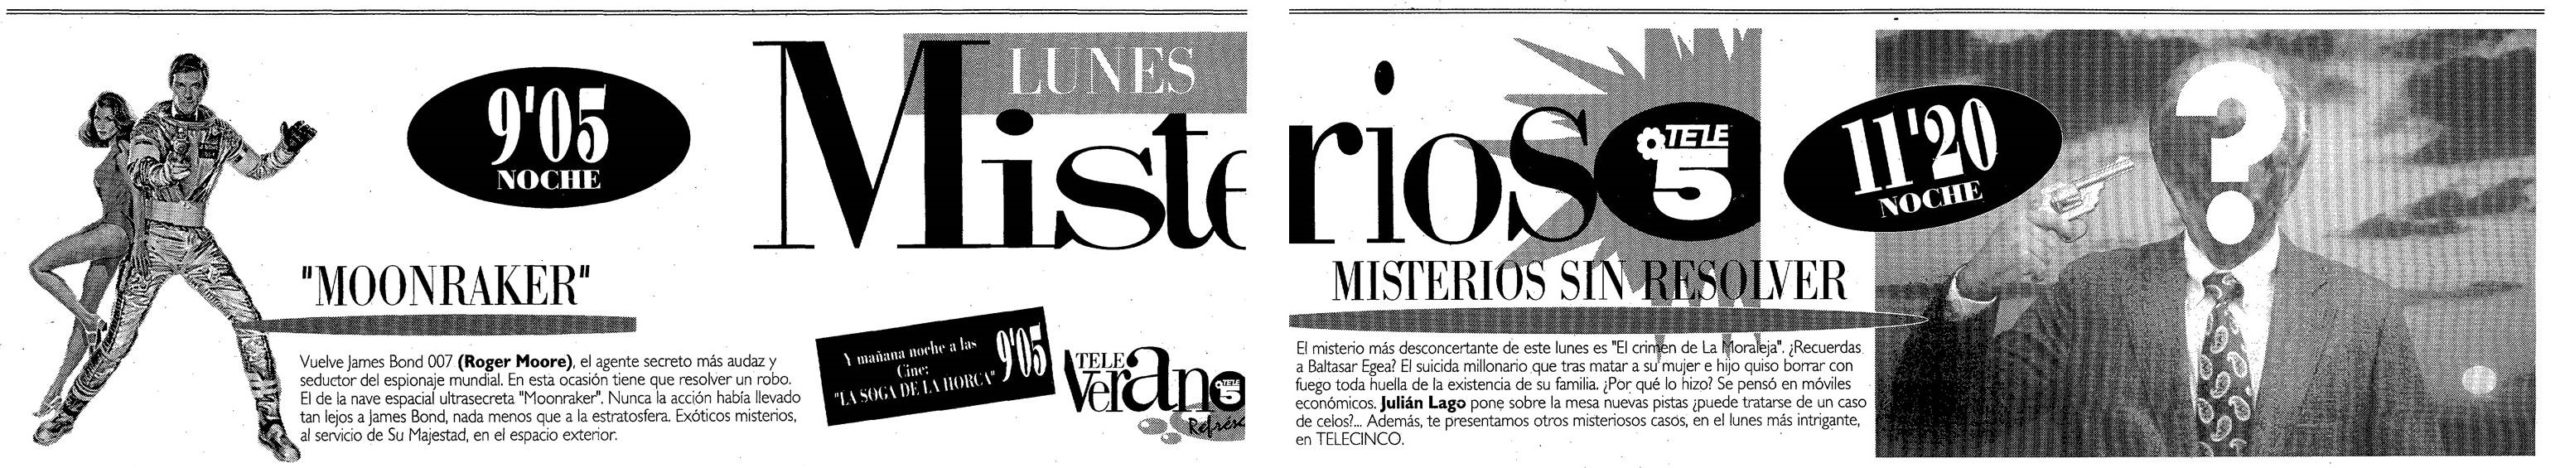 11 1993 09 06 La Vanguardia Barcelona Tele5 scaled